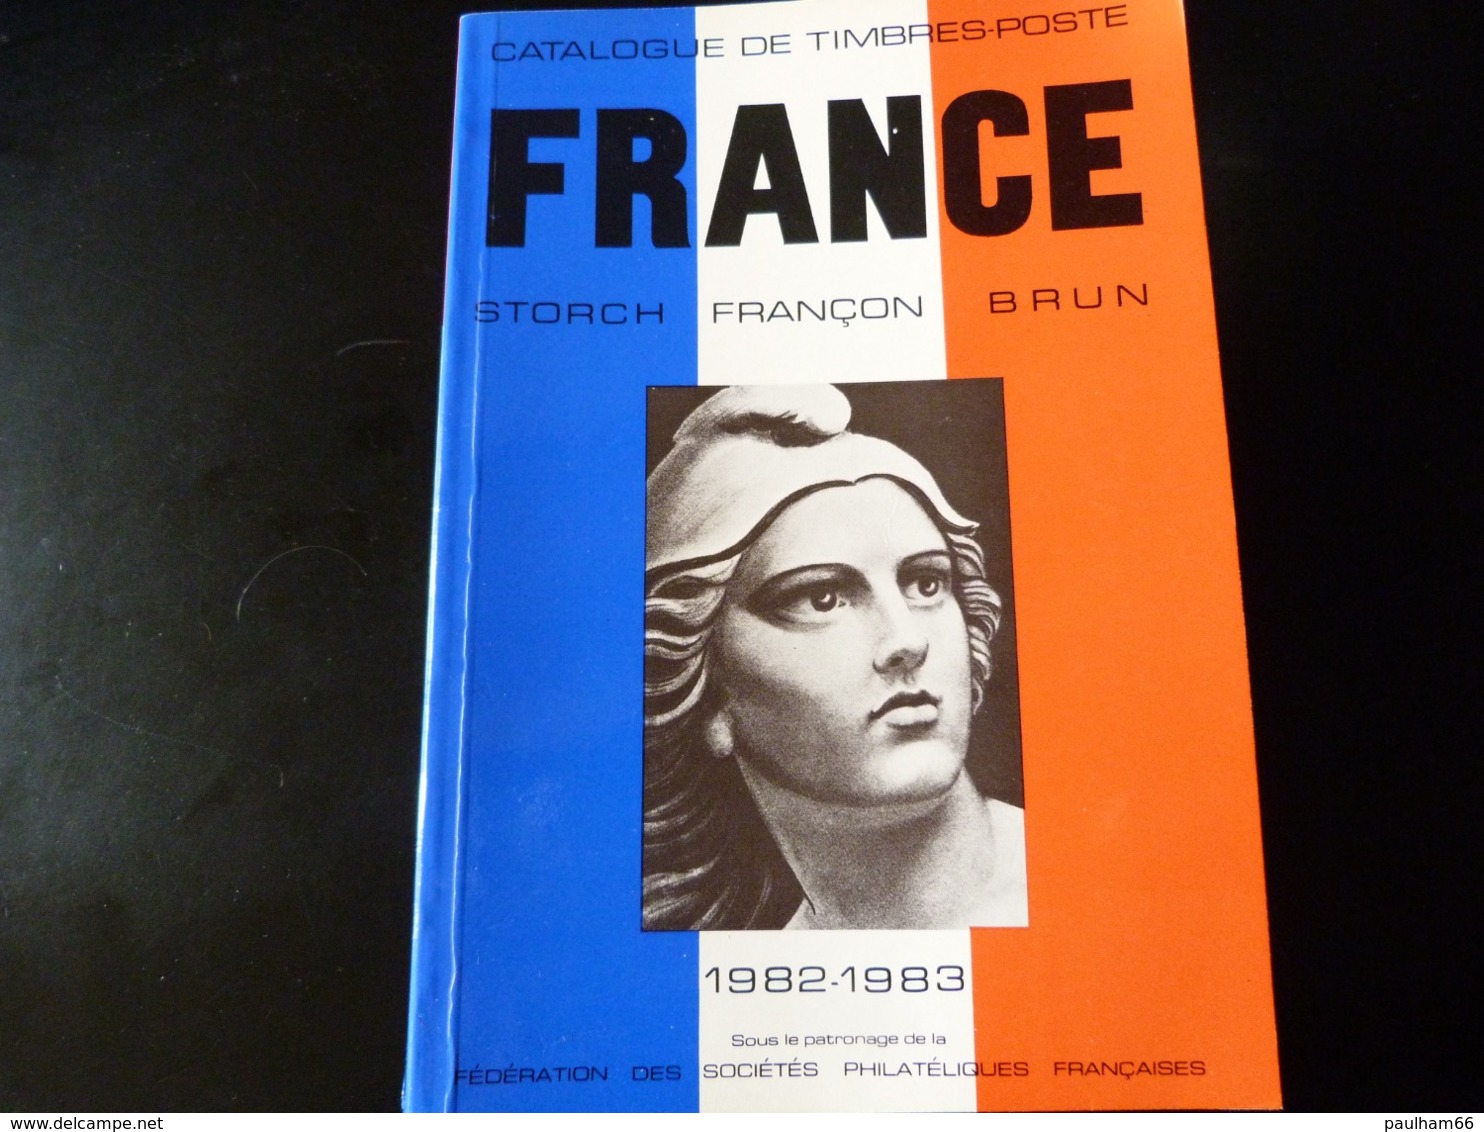 CATALOGUE  TIMBRES DE FRANCE  - STORCH - FRANCON - BRUN   1982 - 1983 - Handbücher